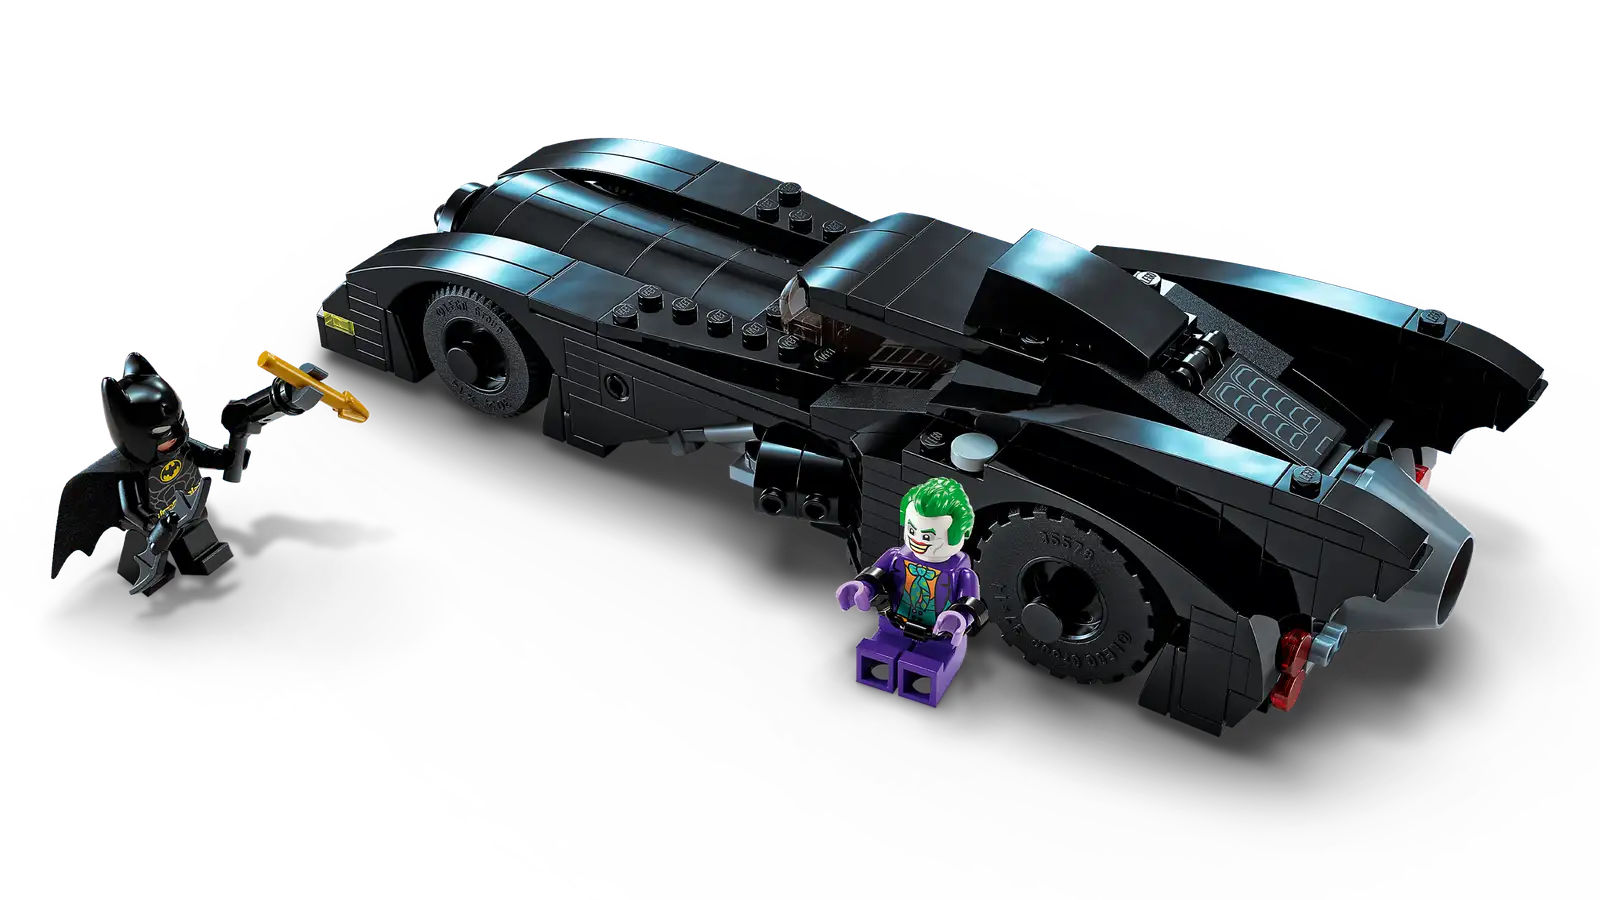 Buy LEGO® Batmobile™ Pursuit: Batman™ vs. The Joker™ online for24